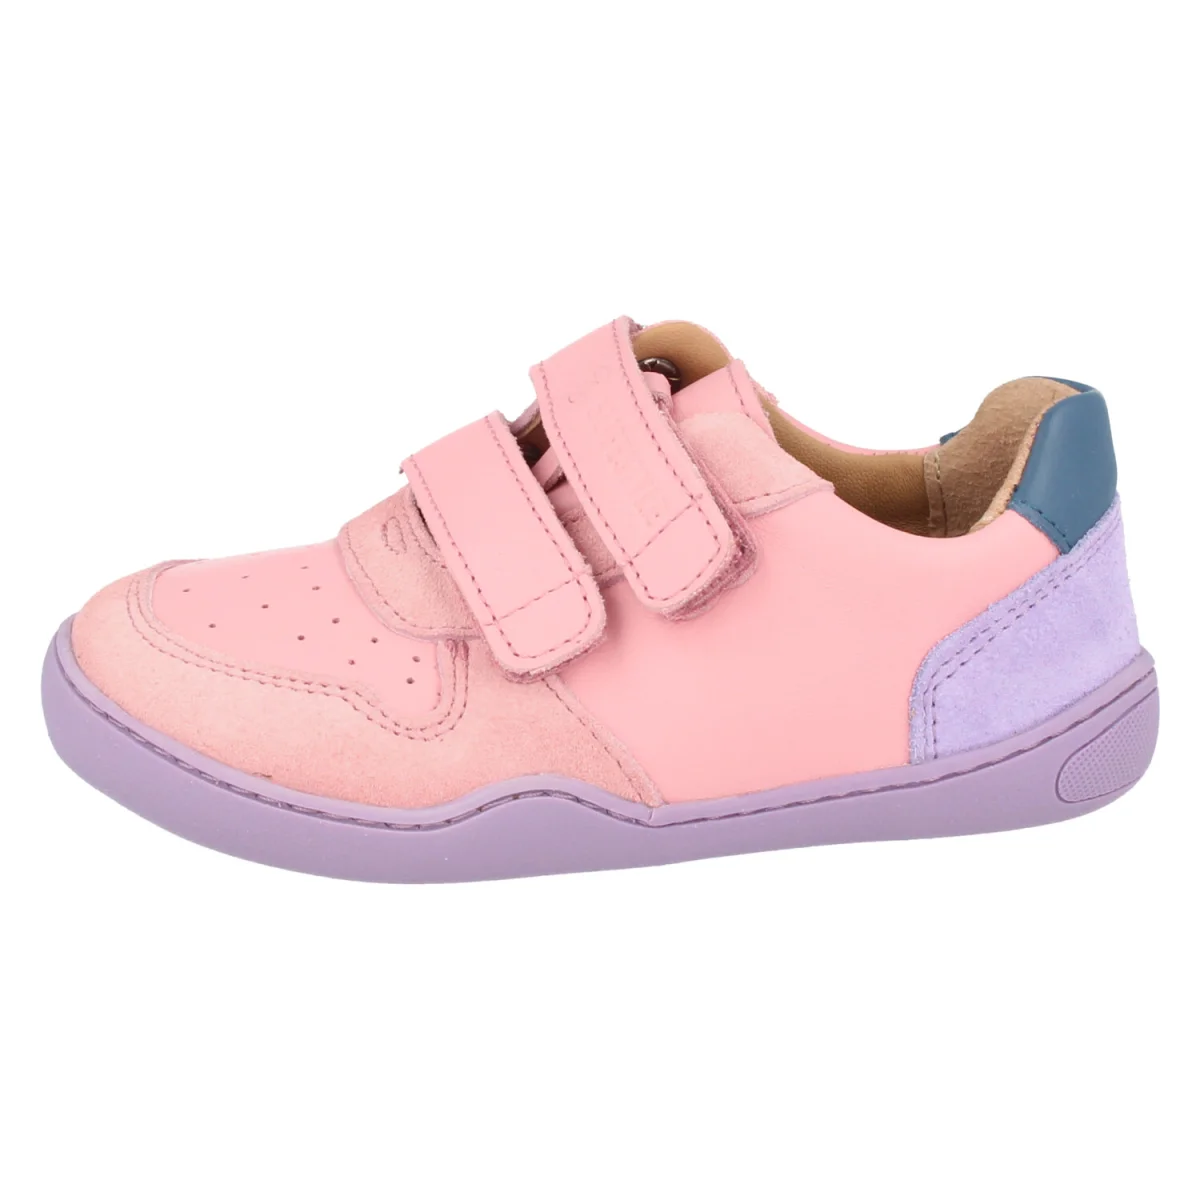 bLIFESTYLE Anura nahast tennised- Pink Laste barefoot jalatsid - HellyK - Kvaliteetsed lasteriided, villariided, barefoot jalatsid